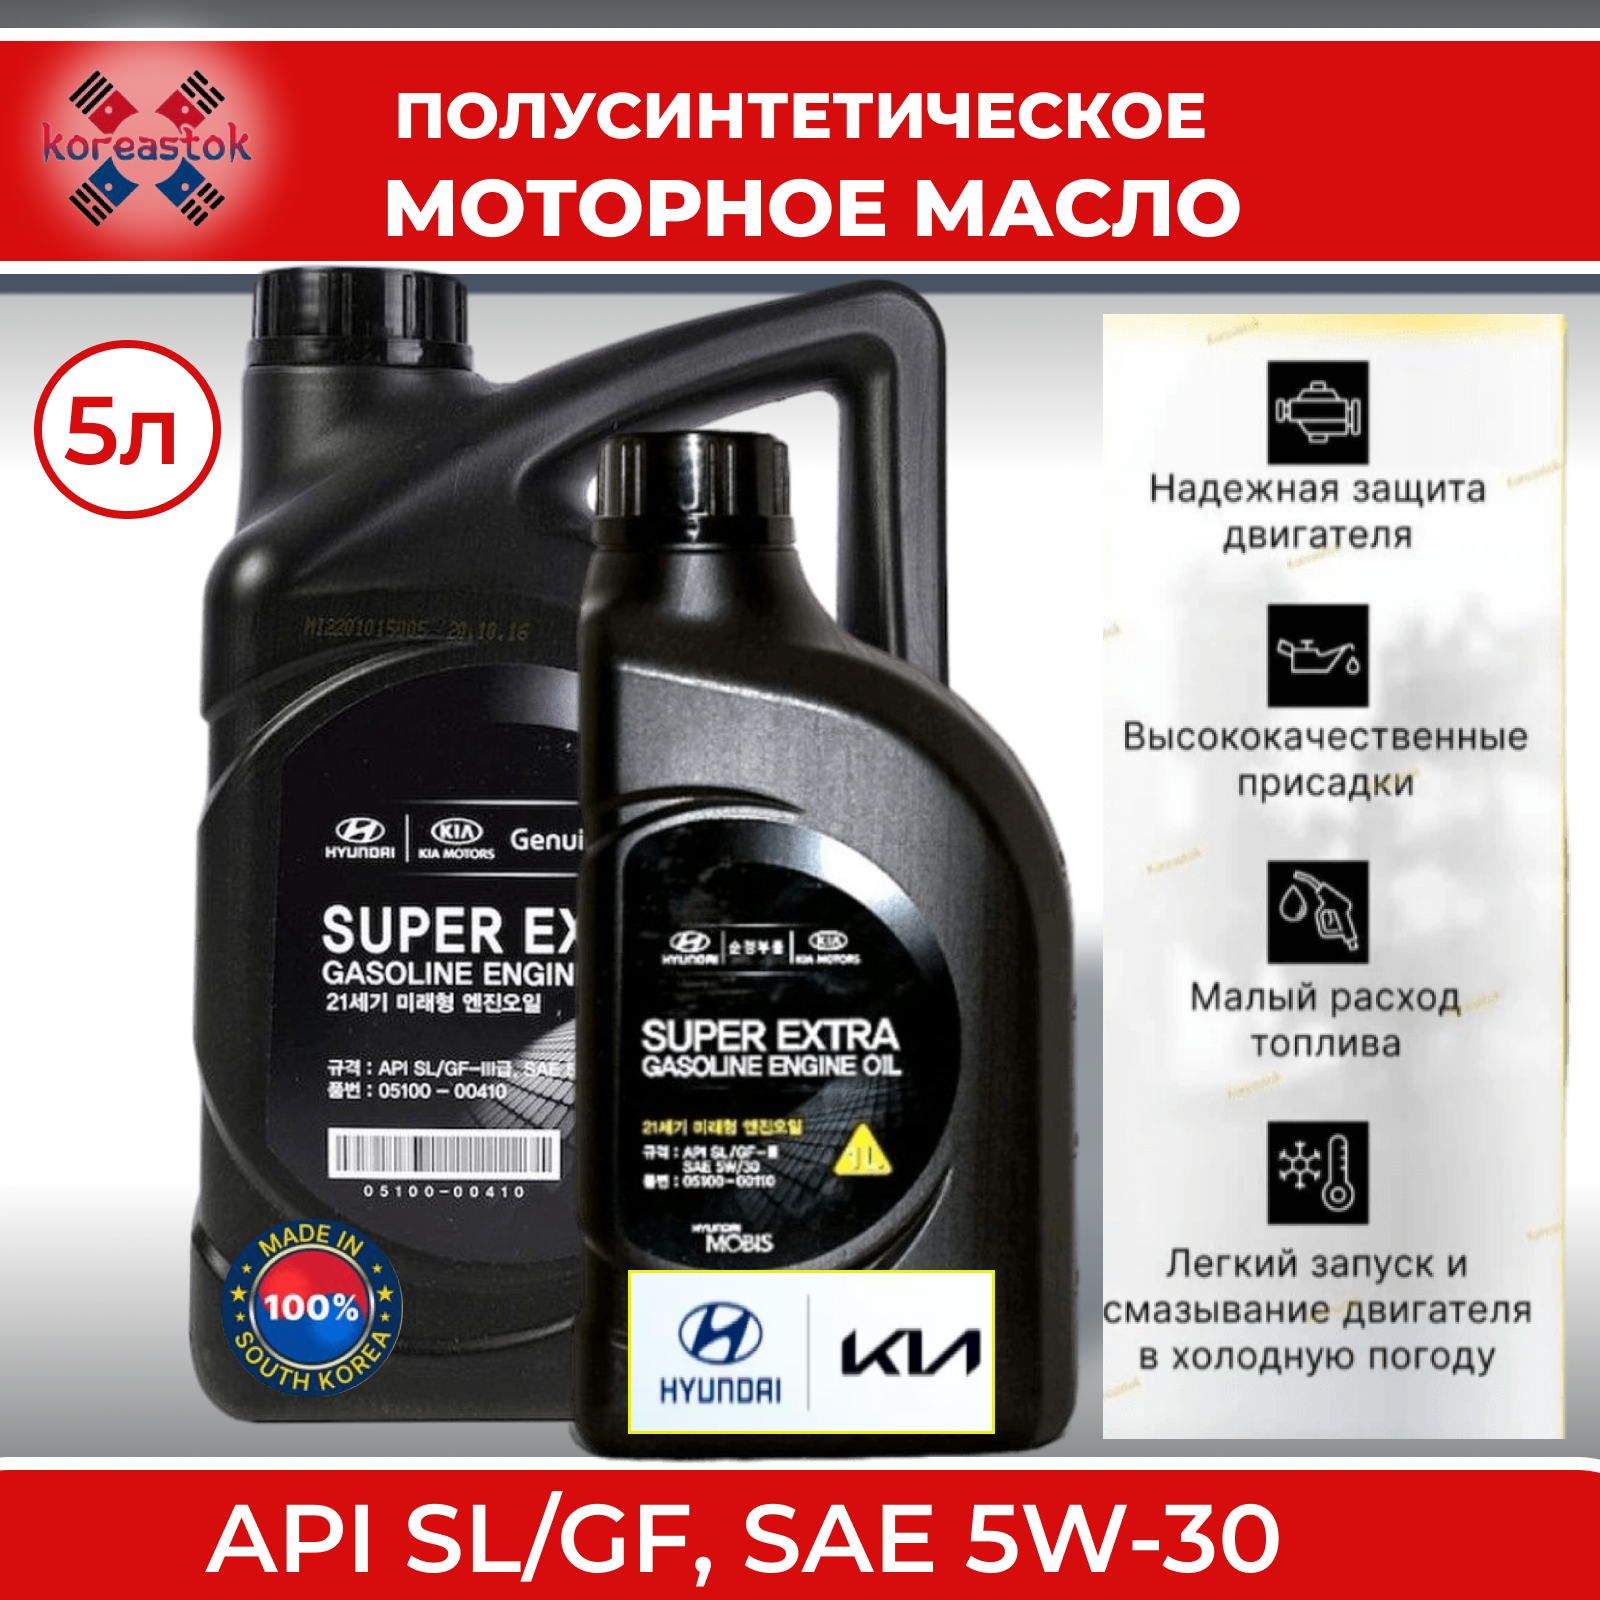 Моторное масло, MOBIS Super Extra 5W-30, полусинтетическое , 5 литров (4л.+1л.)